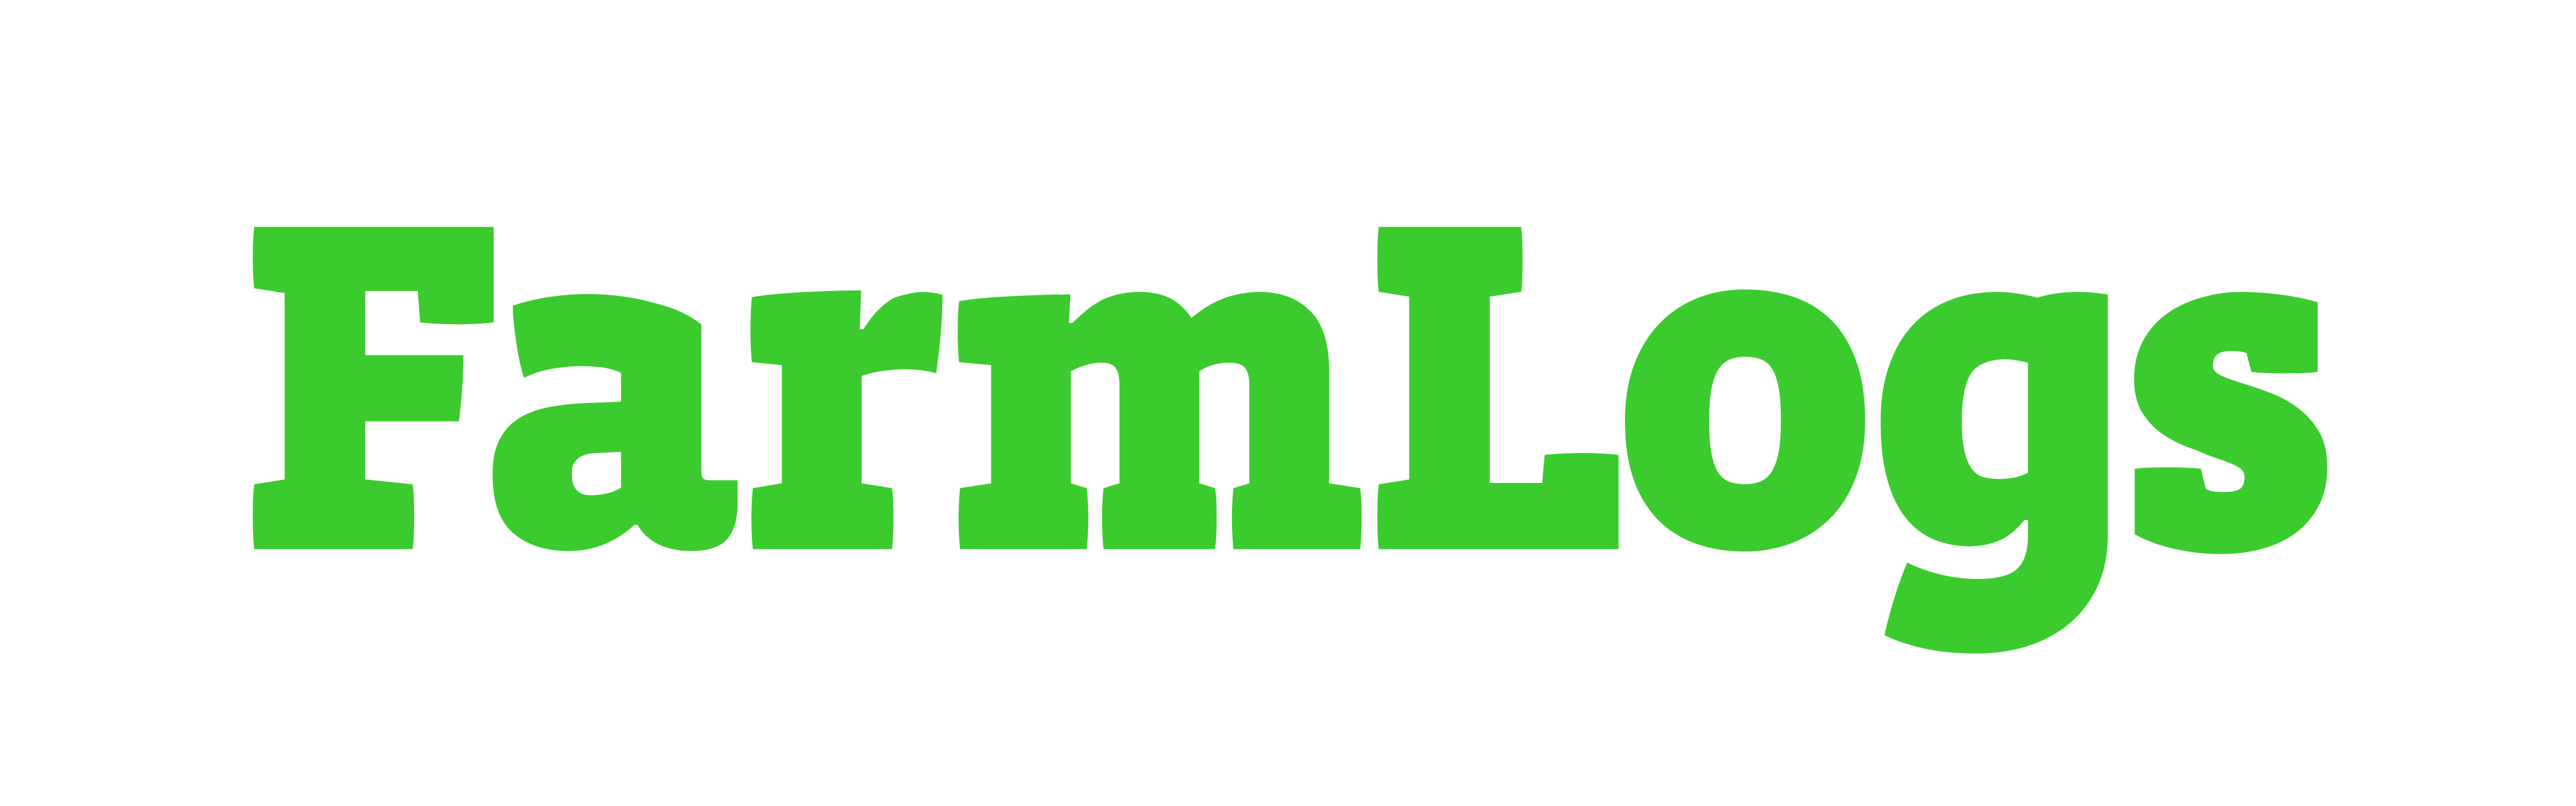 Green Rectangle Company Logo - Company logos. Naspers Brand Portal